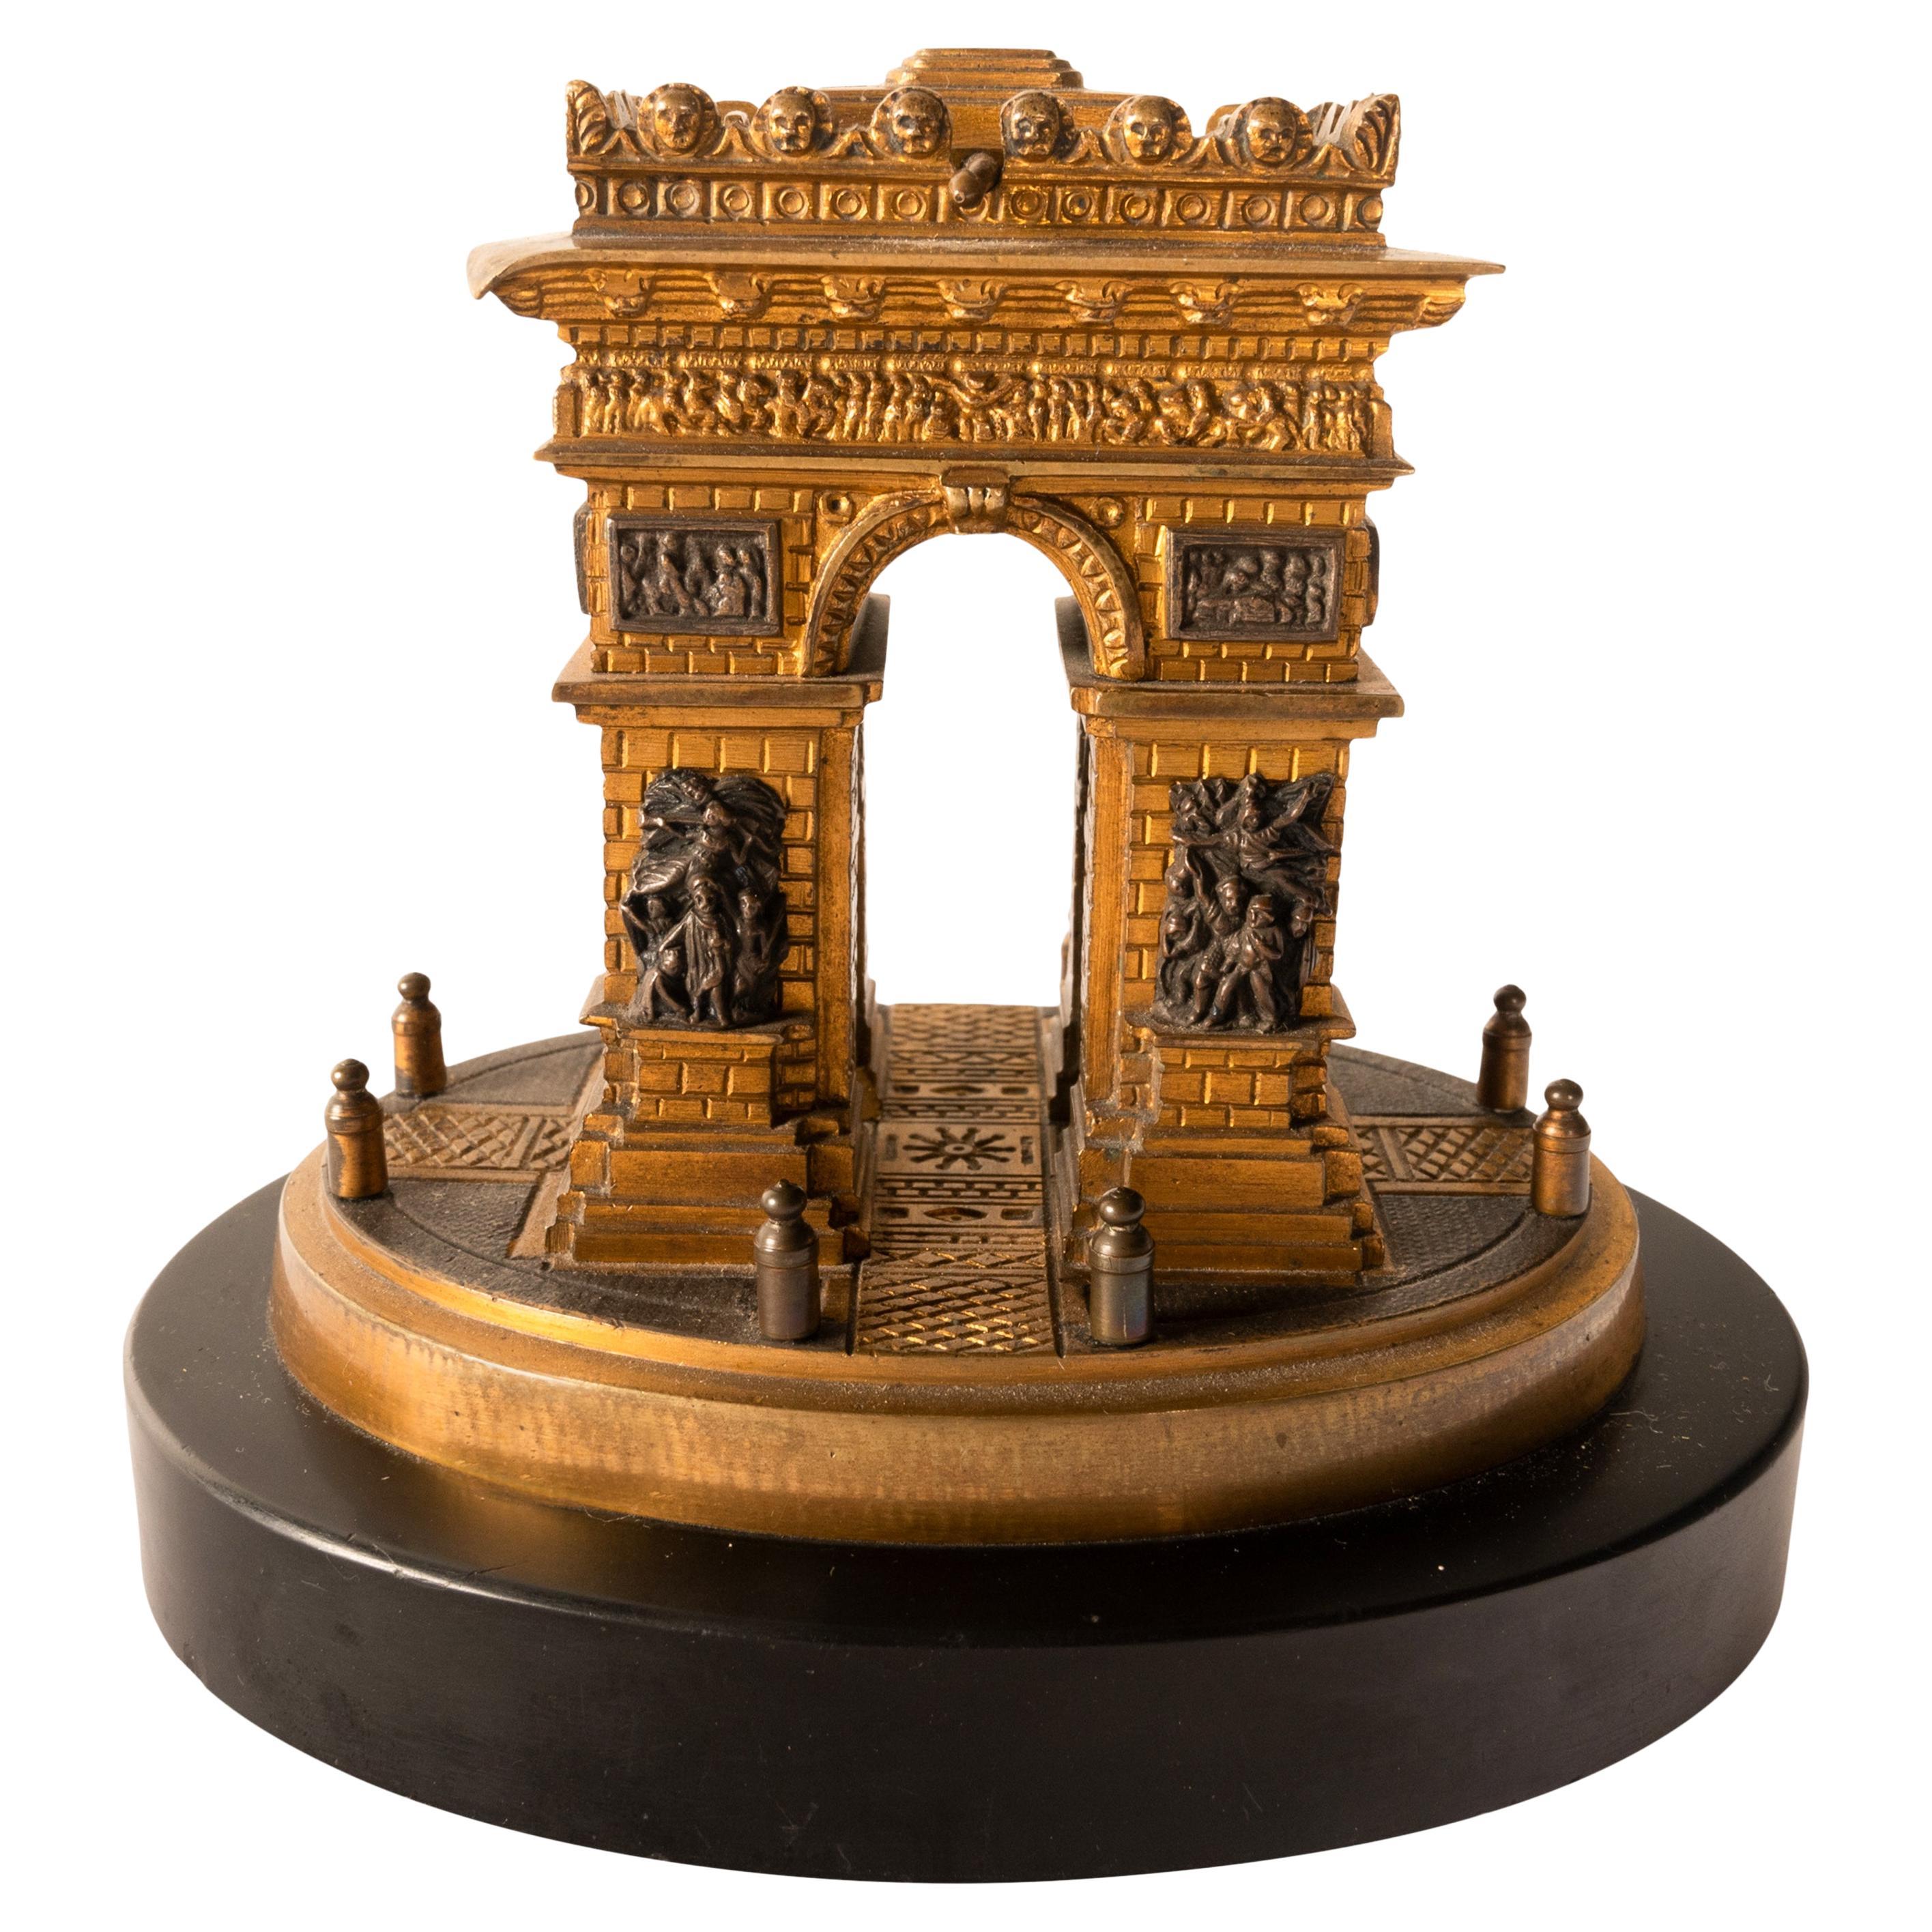 Belle maquette architecturale en bronze doré du début du XIXe siècle représentant l'Arc de Triomphe, française, vers 1825.
Ce très beau modèle de grande visite de l'un des monuments les plus célèbres de France, ayant  fronton avec couvercle à